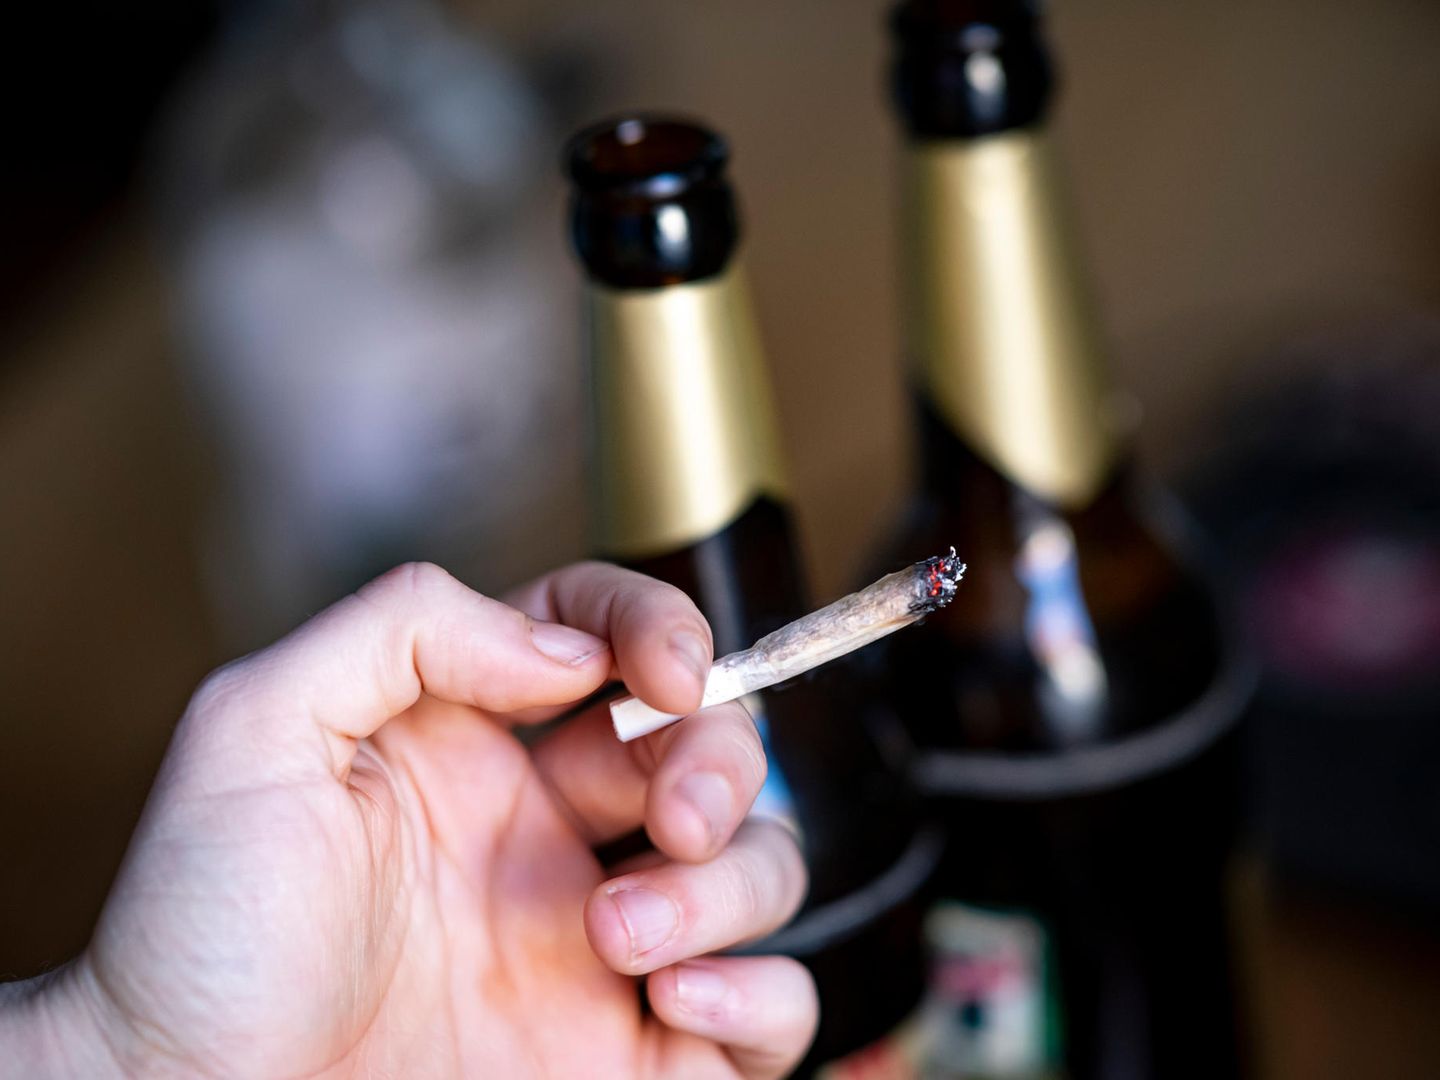 Związek Pomiędzy Marihuaną a Spożywaniem Alkoholu, jamaica.com.pl